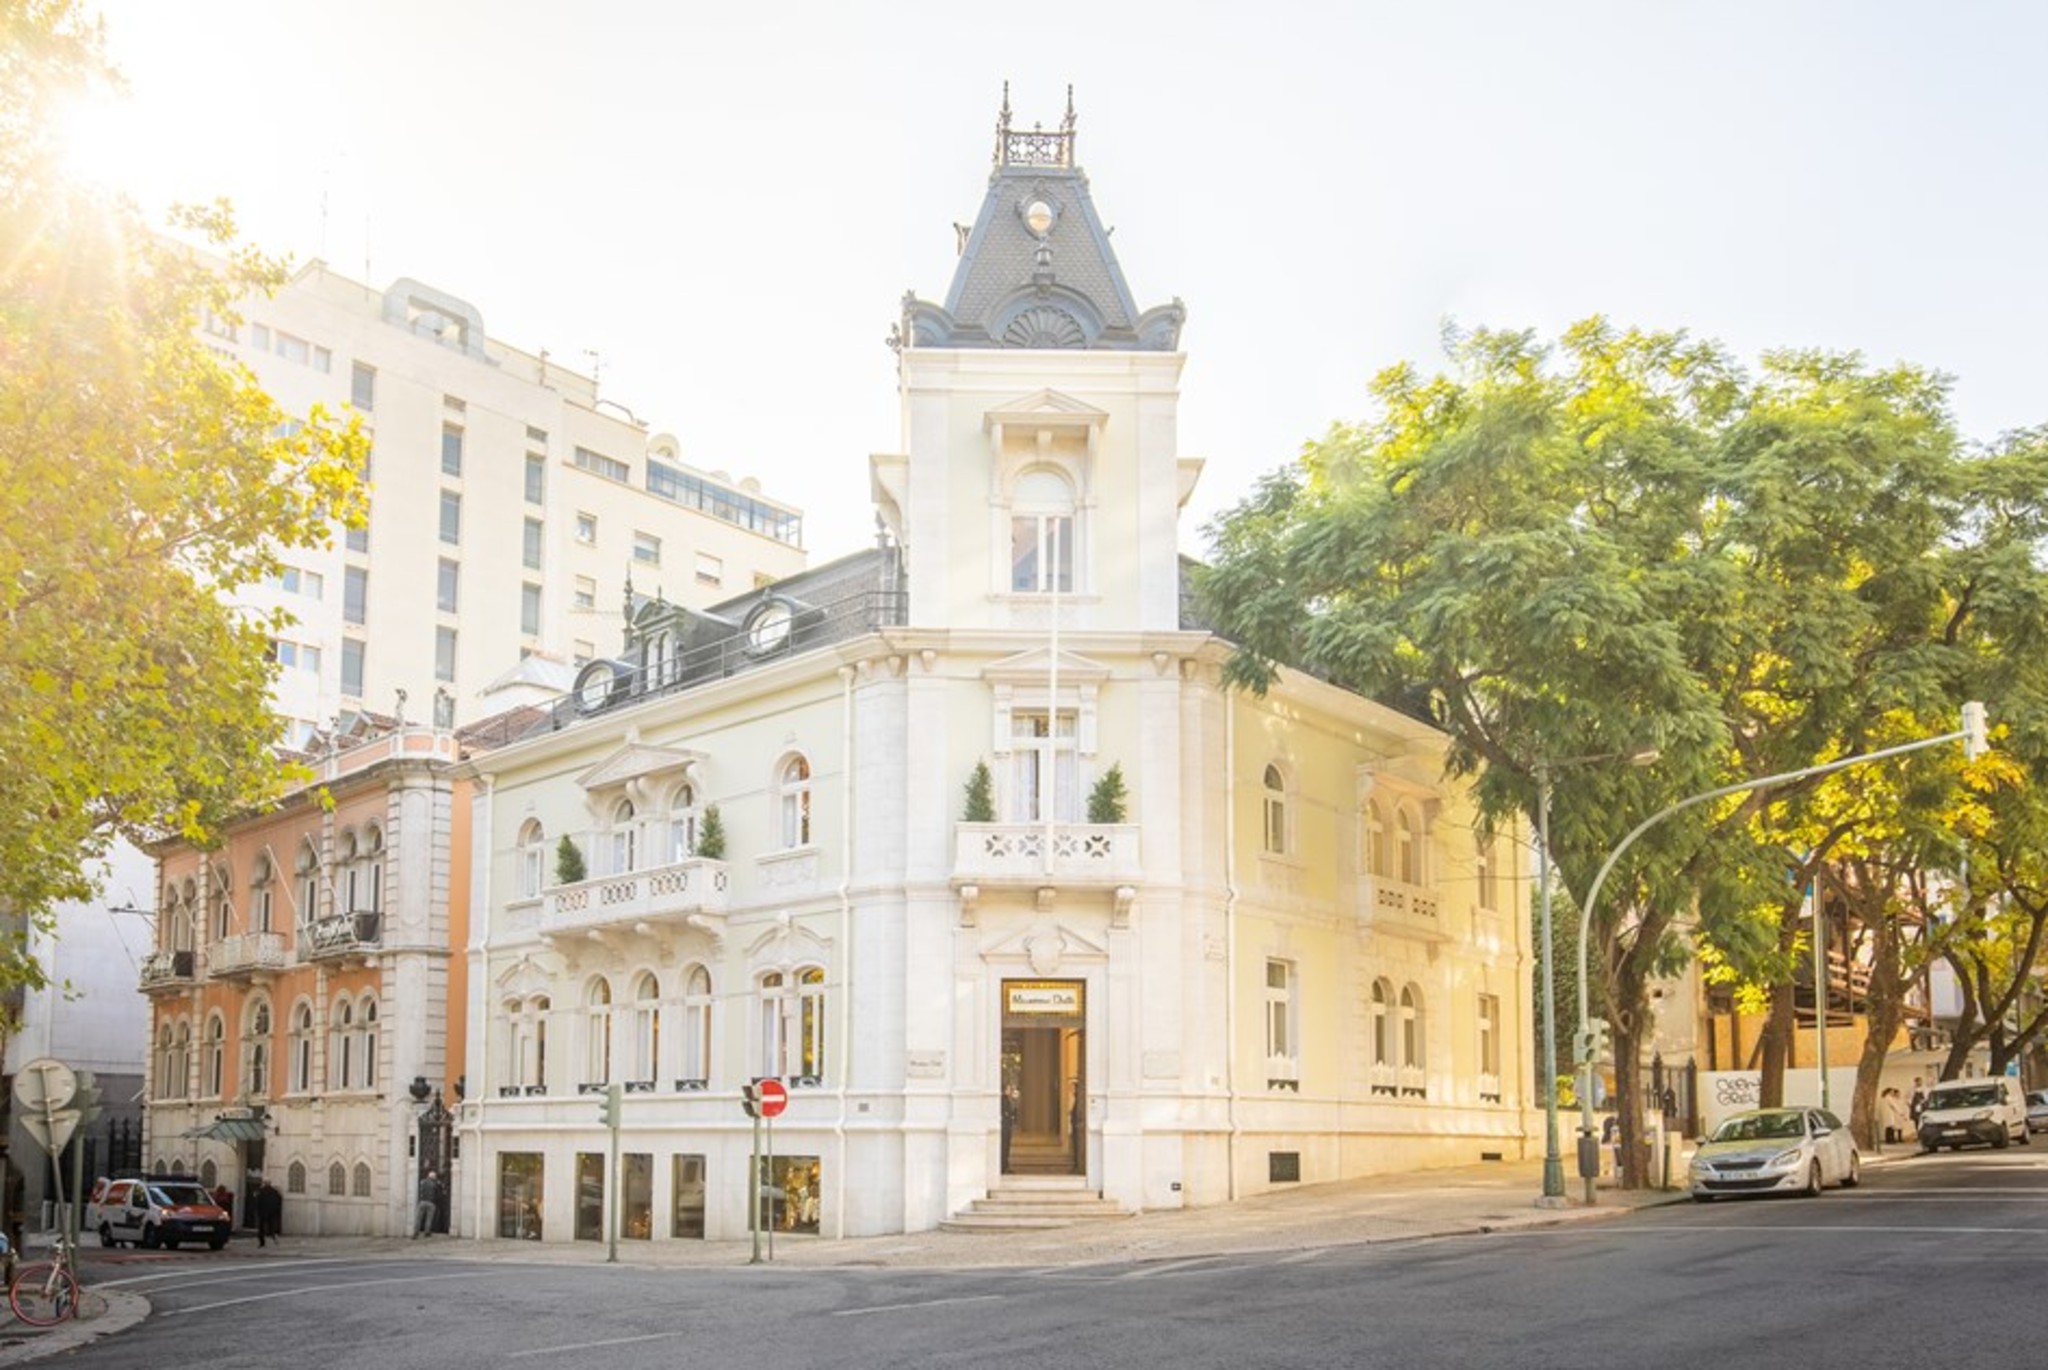 As lojas mais bonitas de Lisboa | Unibanco